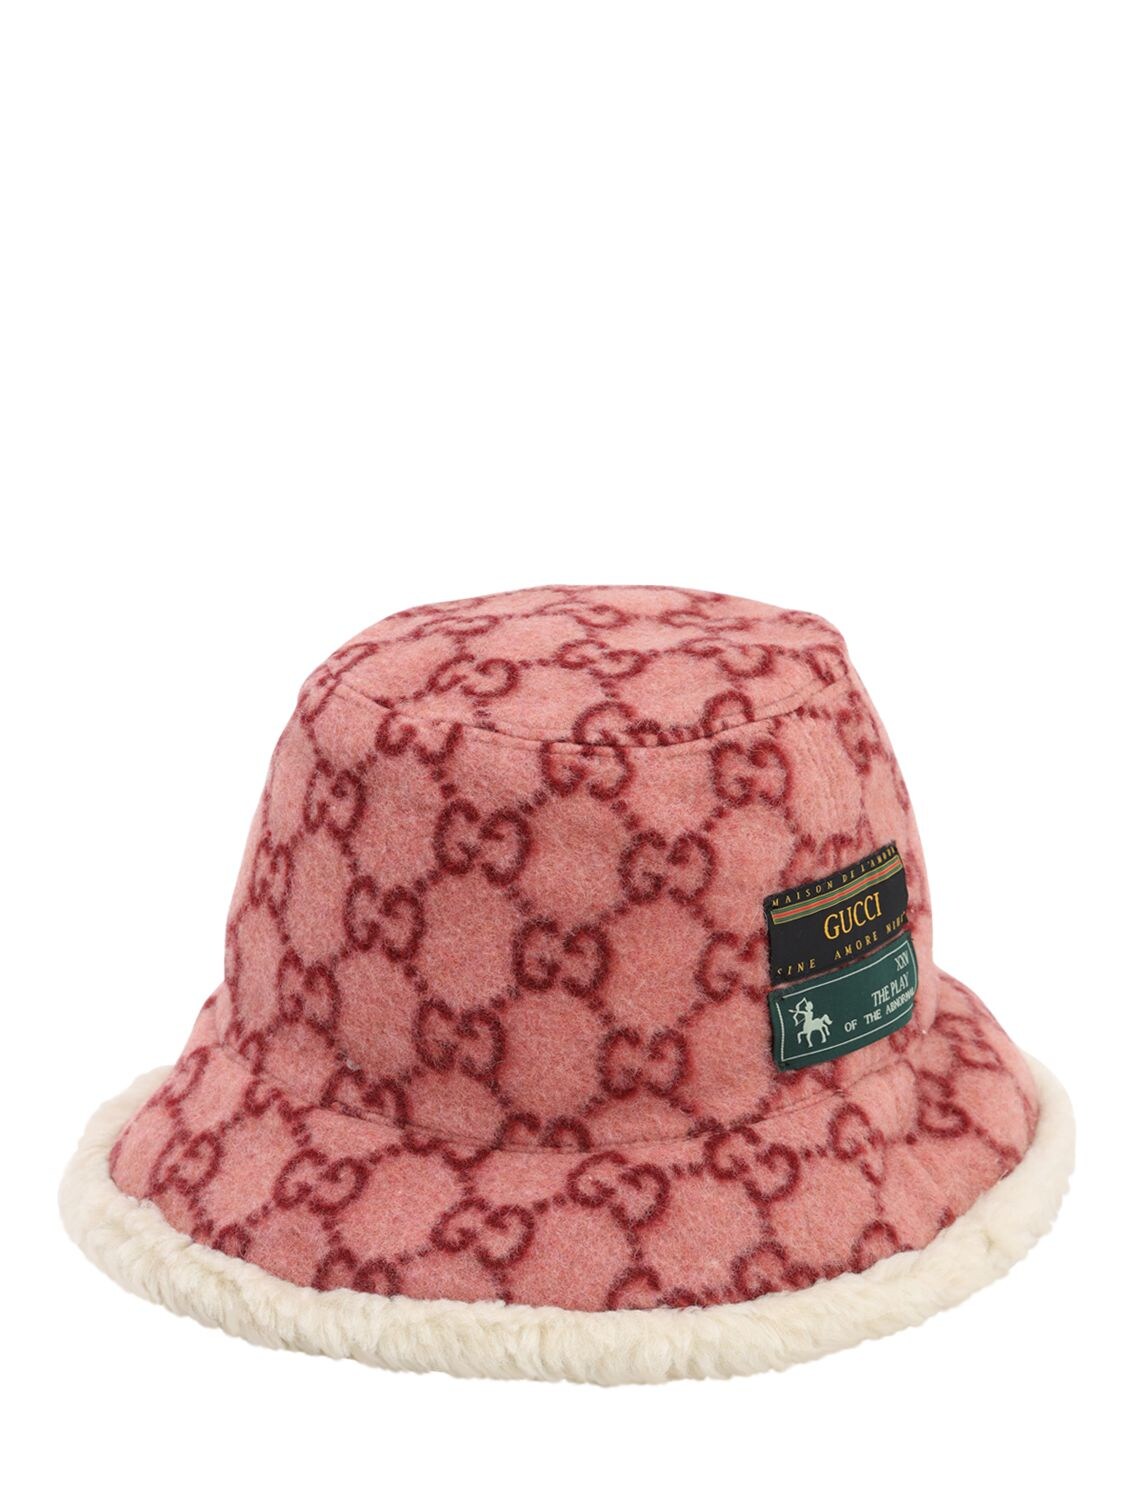 Gucci Gg人造皮草&羊毛帽子 In Pink